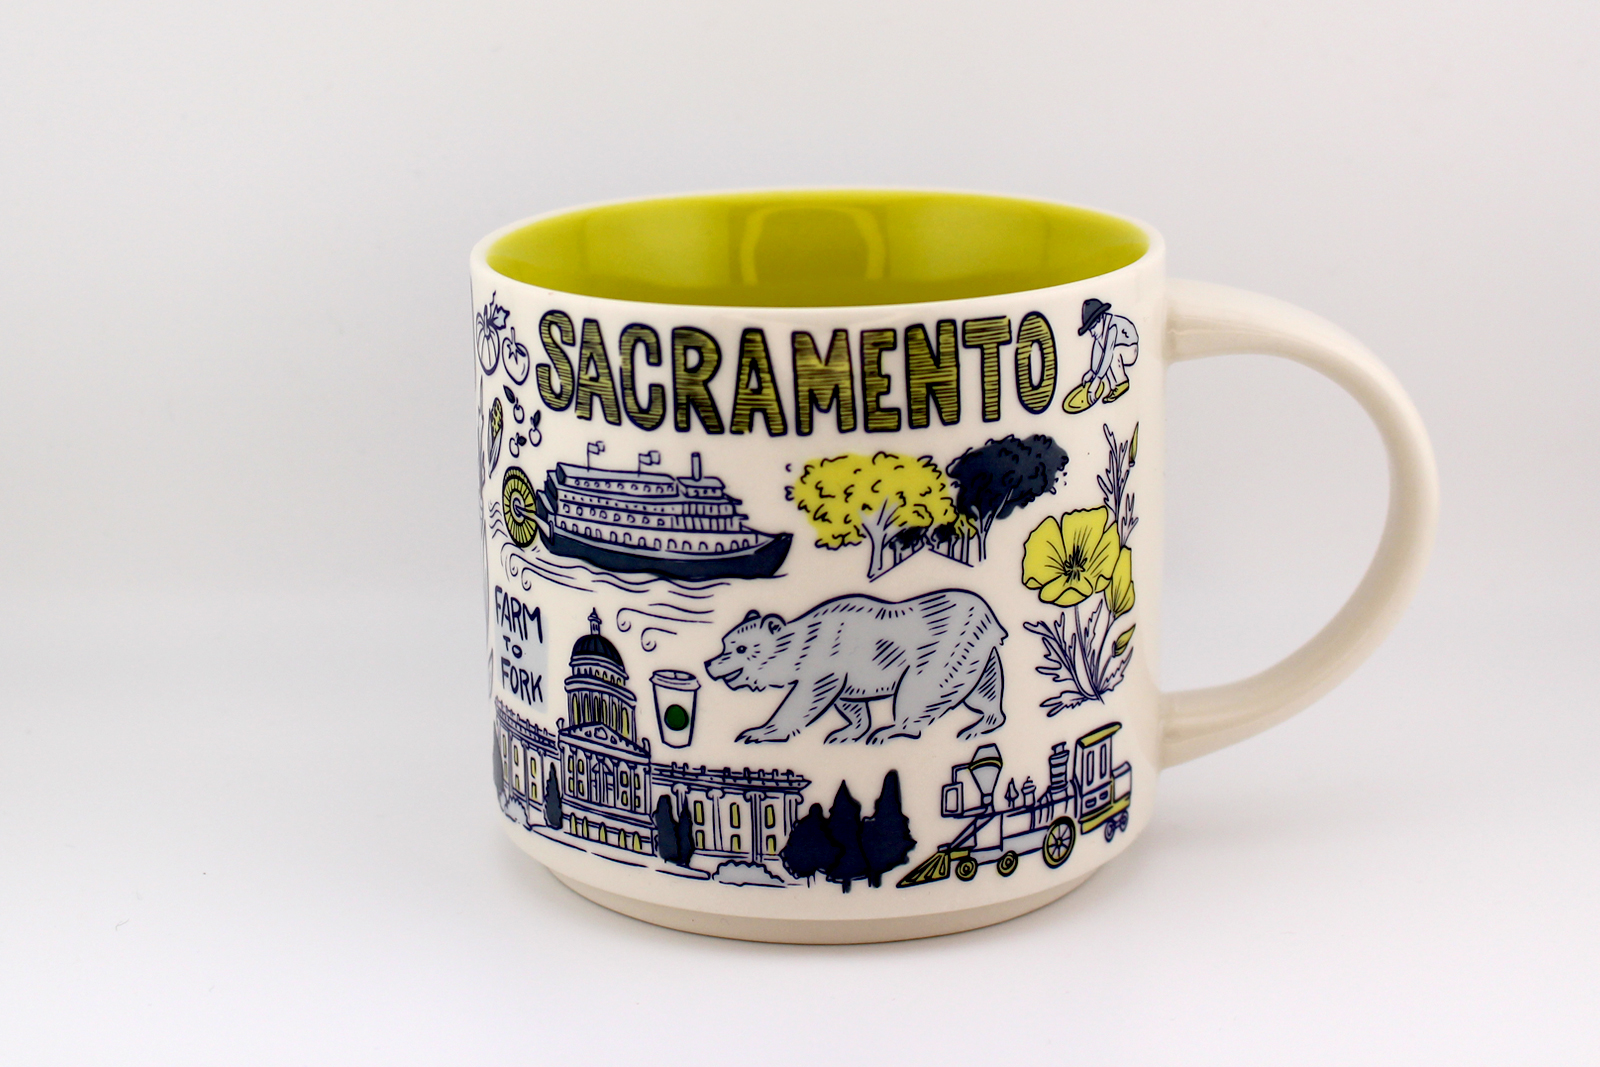 Sacramento Mug: Starbucks Been There Series